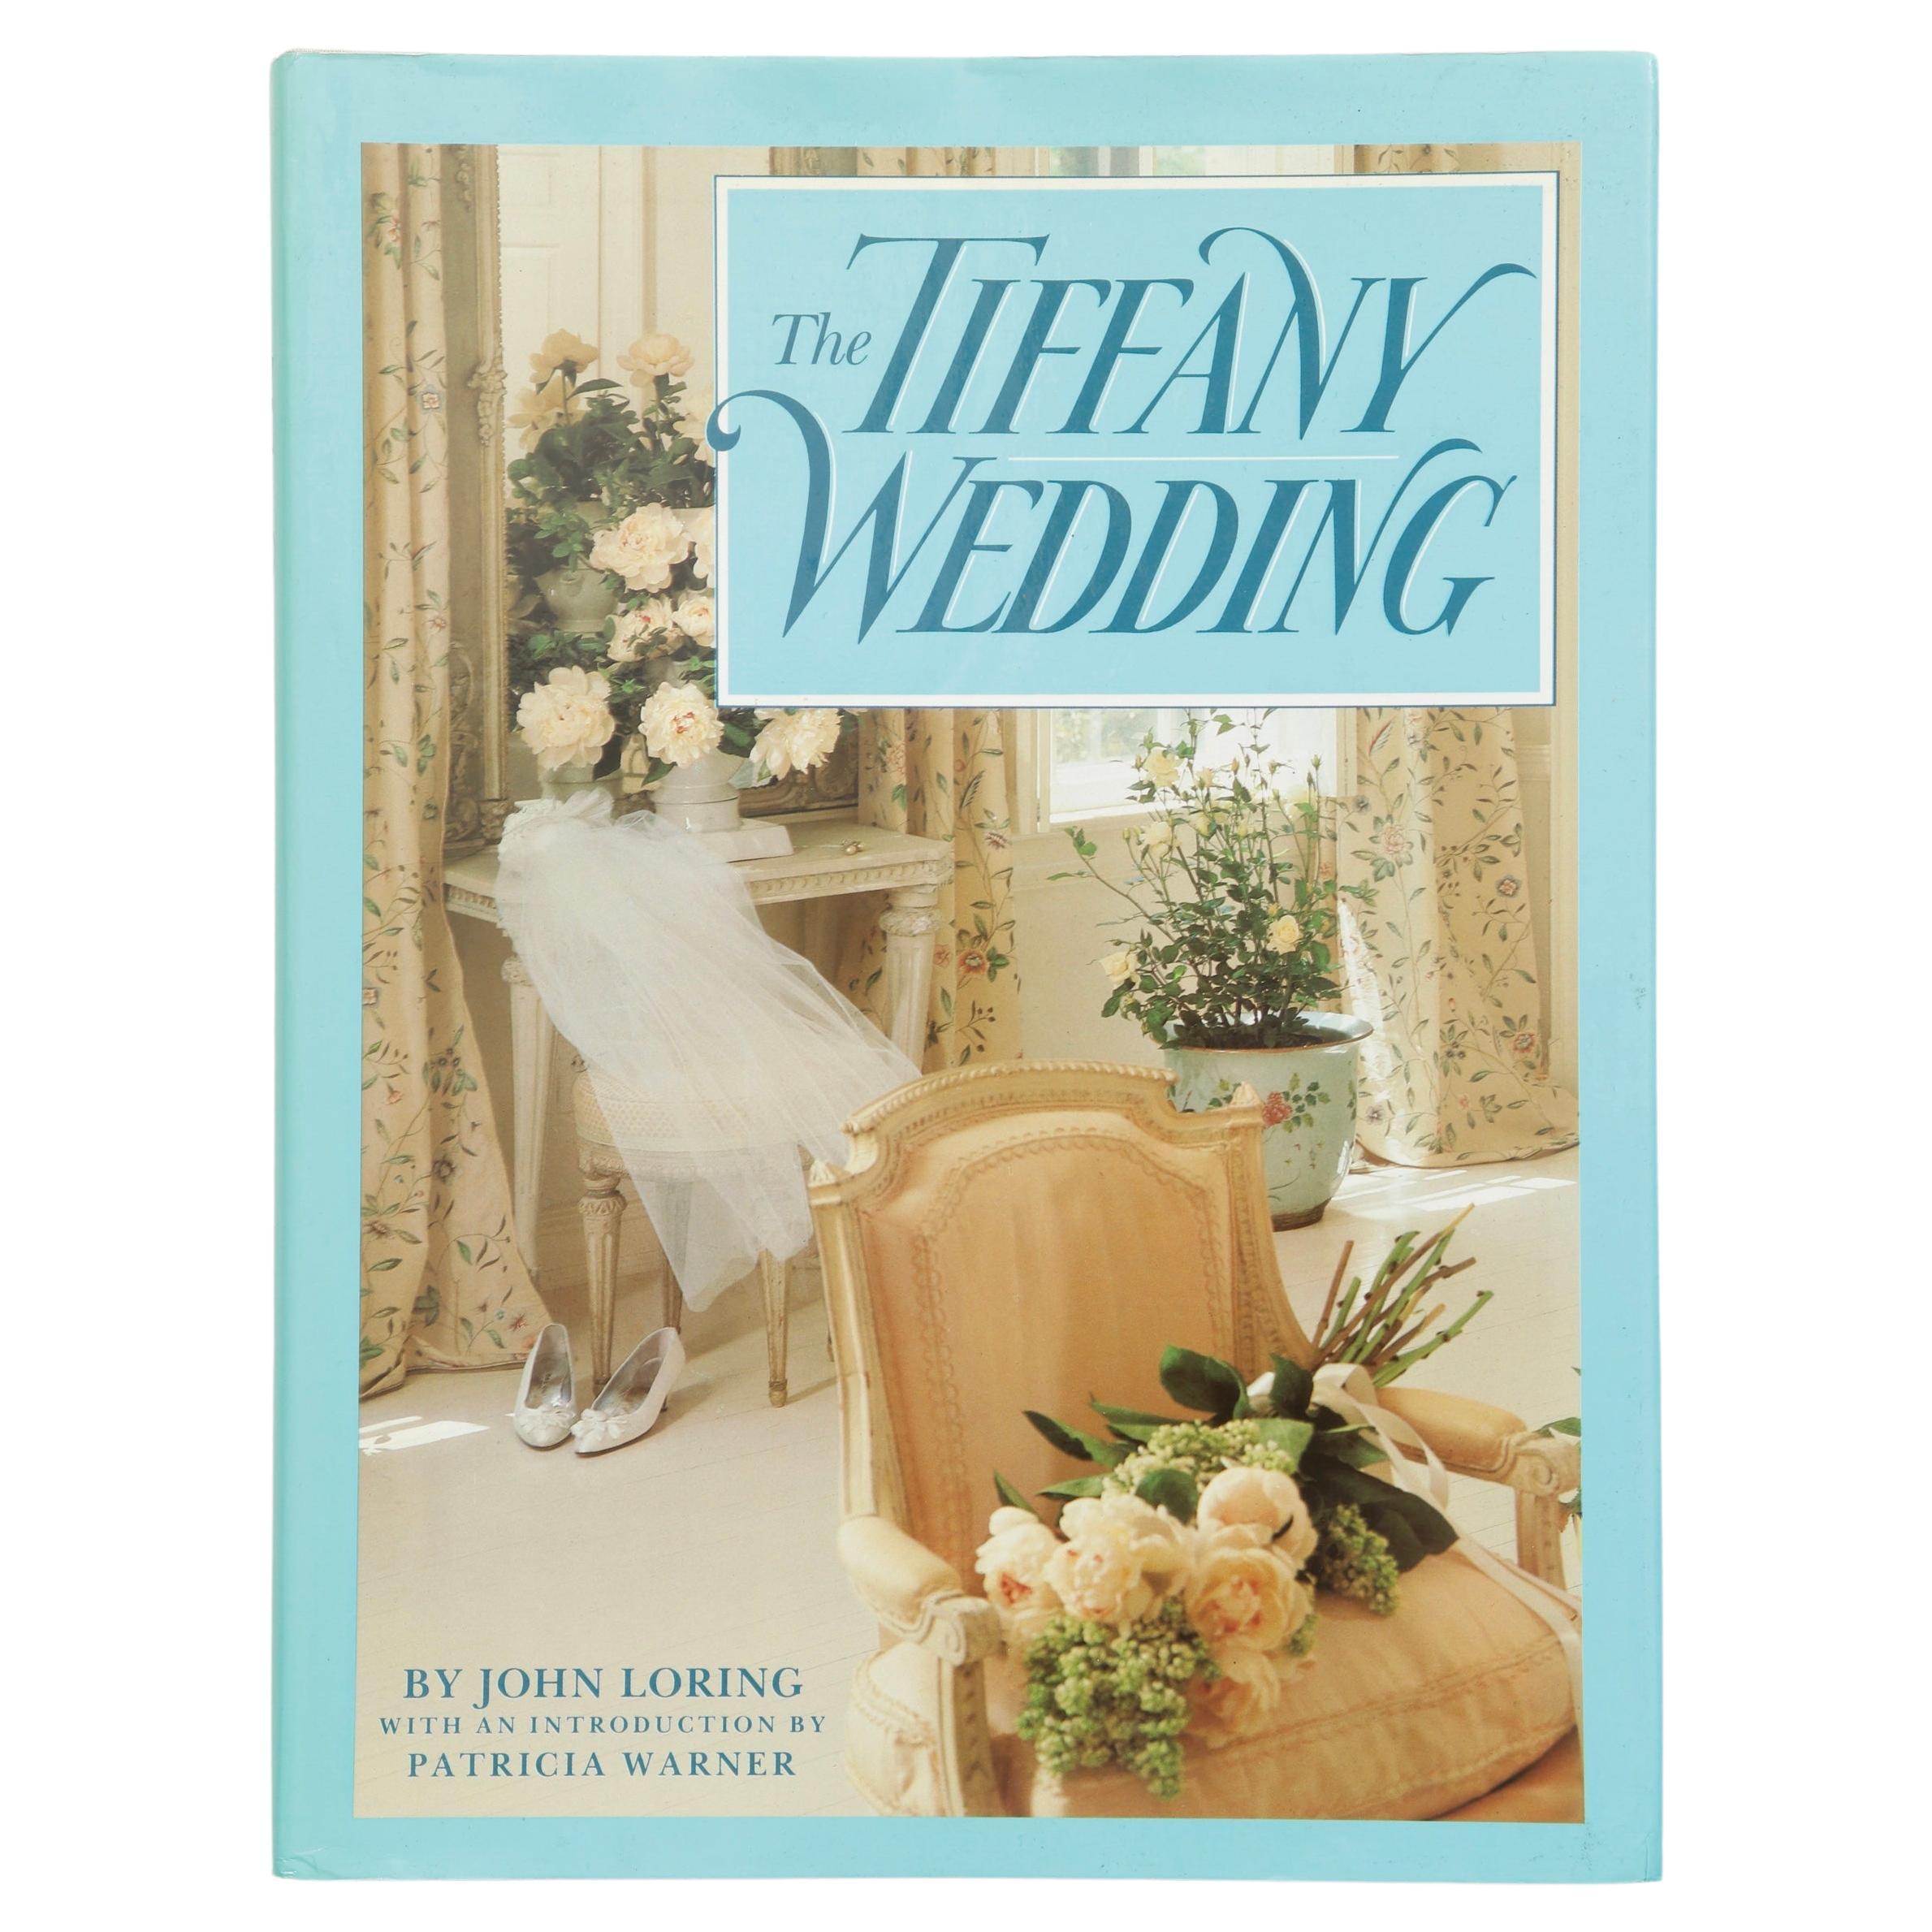 The Tiffany-Hochzeit von John Loring